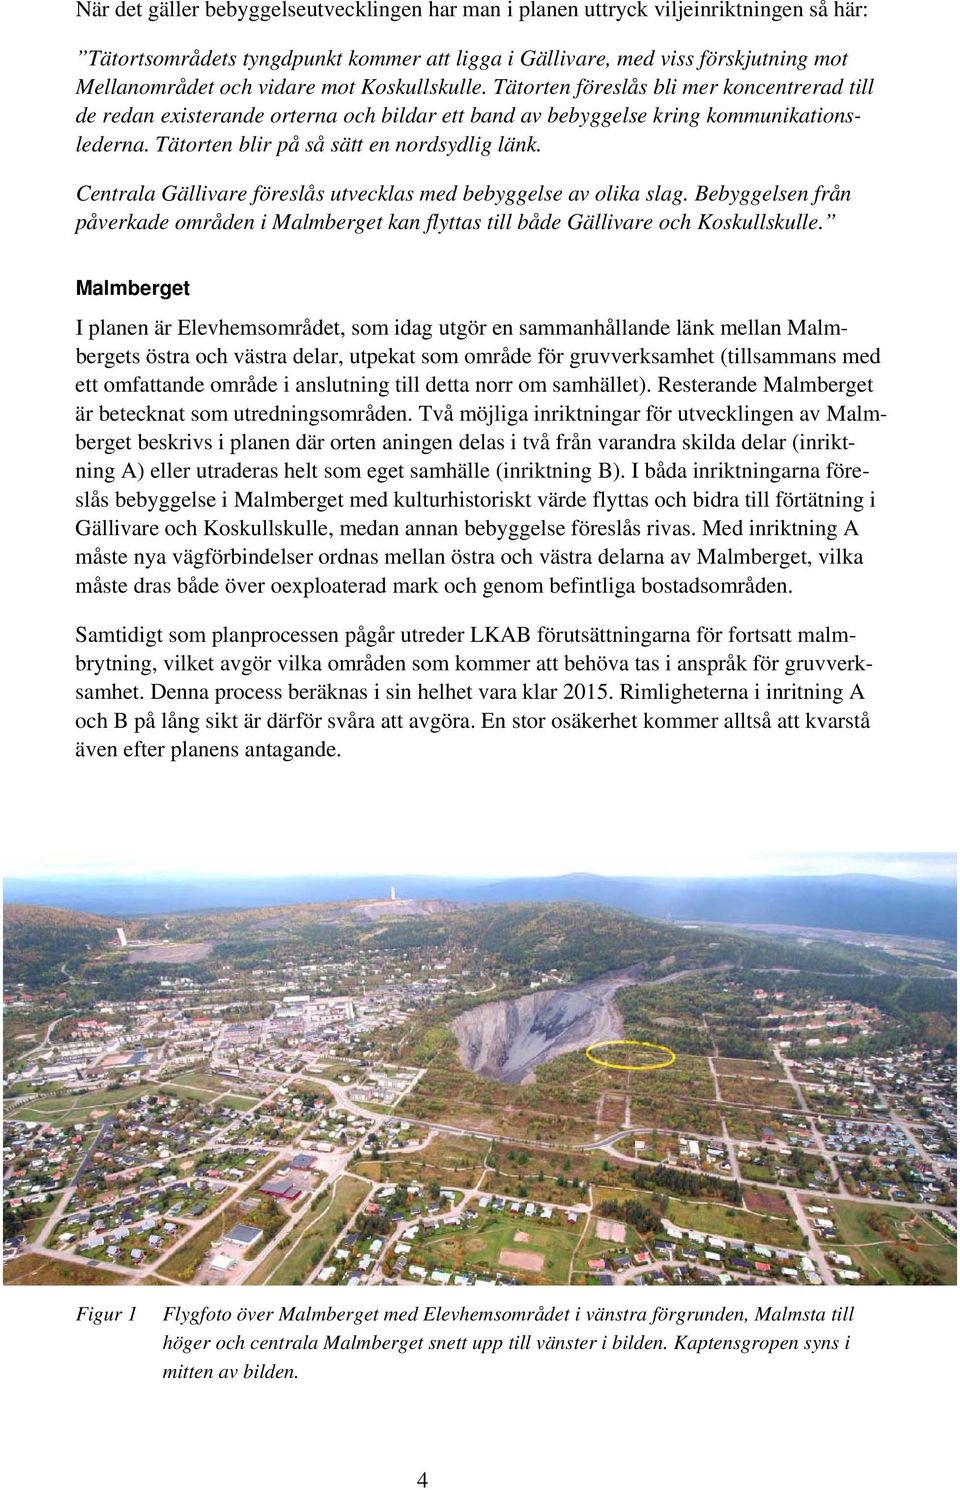 Centrala Gällivare föreslås utvecklas med bebyggelse av olika slag. Bebyggelsen från påverkade områden i Malmberget kan flyttas till både Gällivare och Koskullskulle.